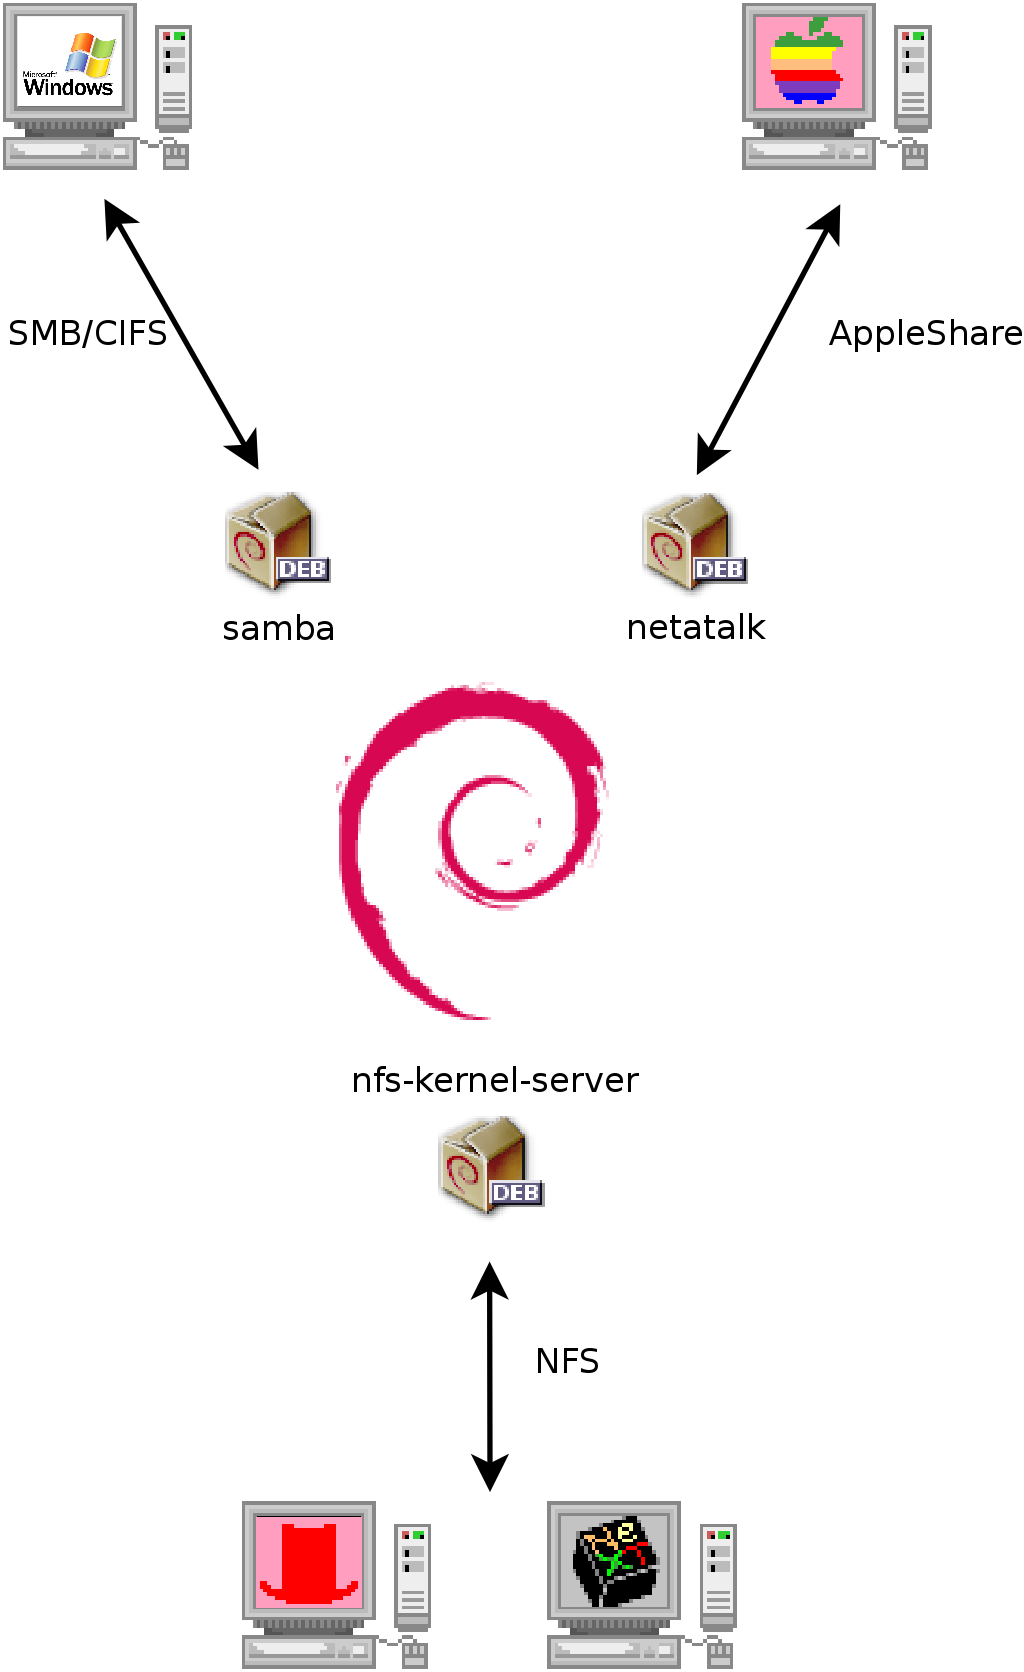 Soužití Debianu s OS X, Windows a systémy Unix